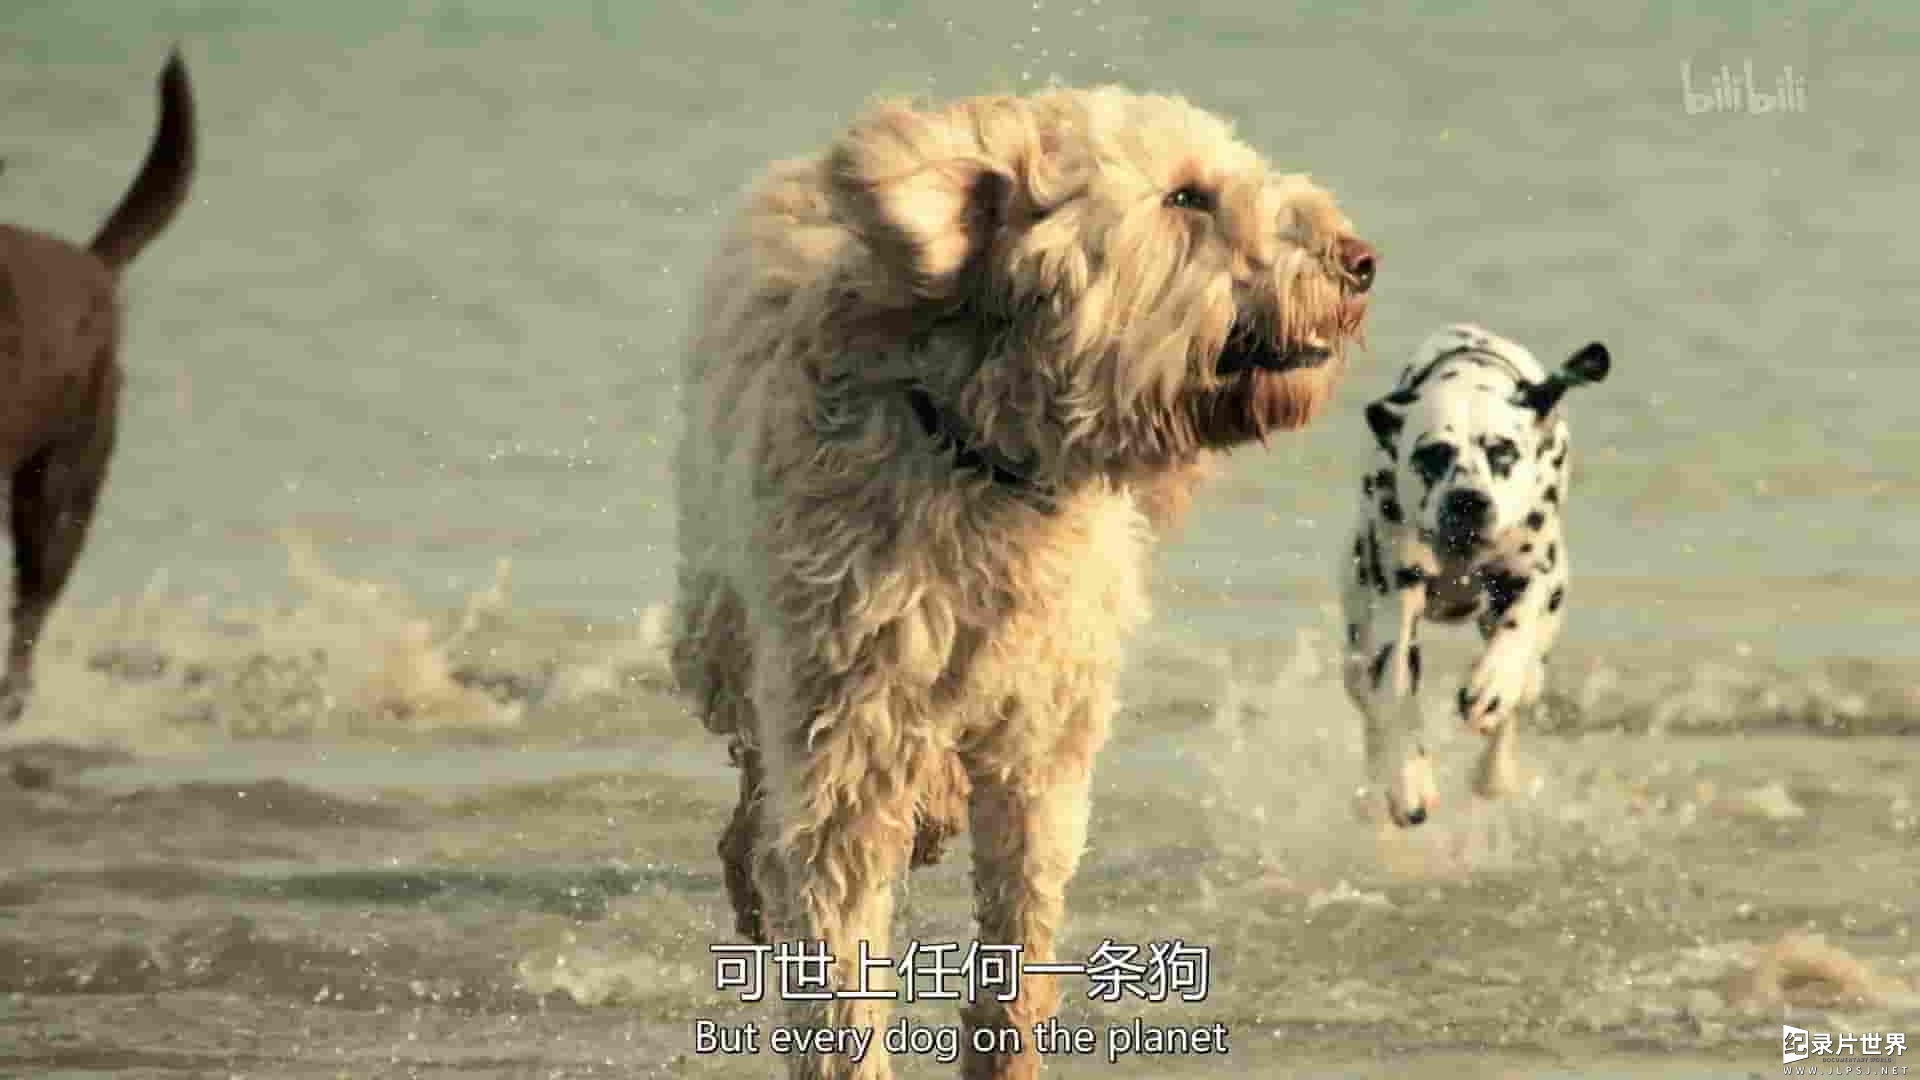 英国纪录片《犬科动物：惊艳不俗的种群 Dogs an Amazing Animal Family 2020》全3集